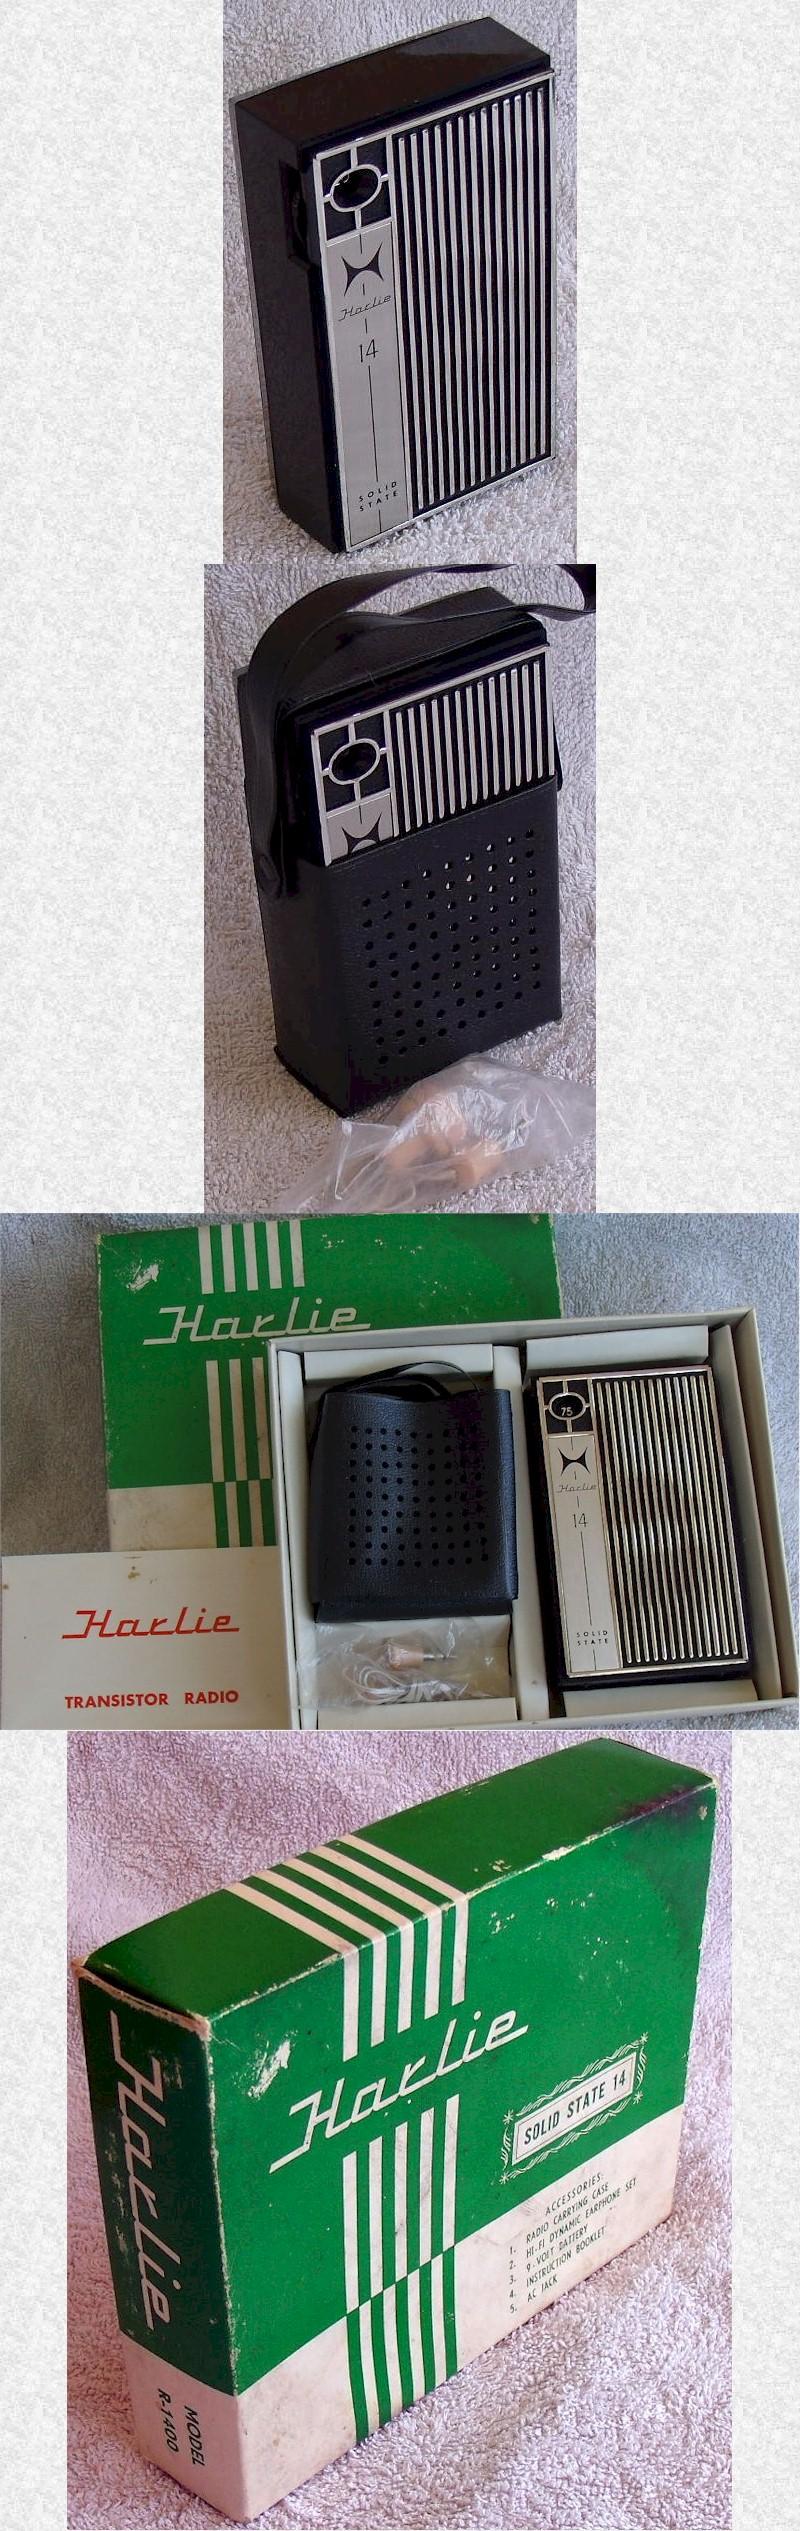 Harlie R-1400 Pocket Transistor (late 60s)